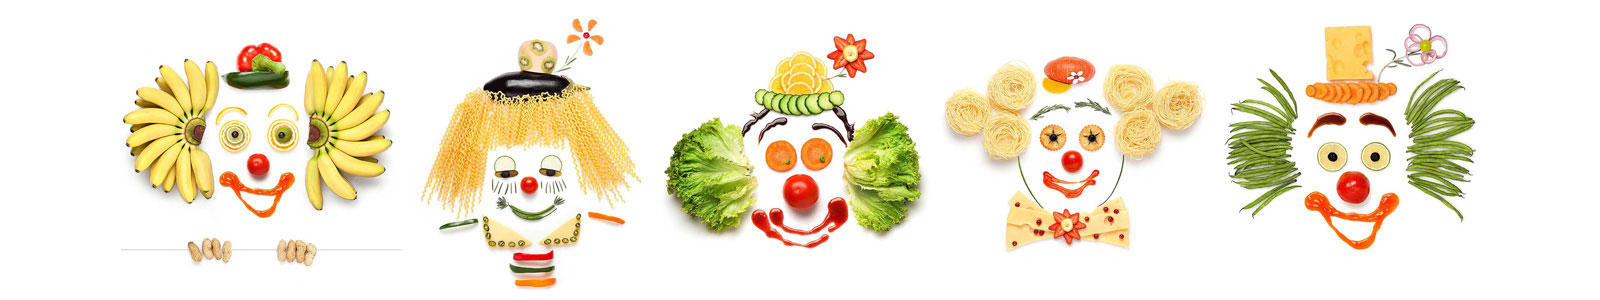 №2647 - Улыбающиеся клоуны из овощей и фруктов на белом фоне